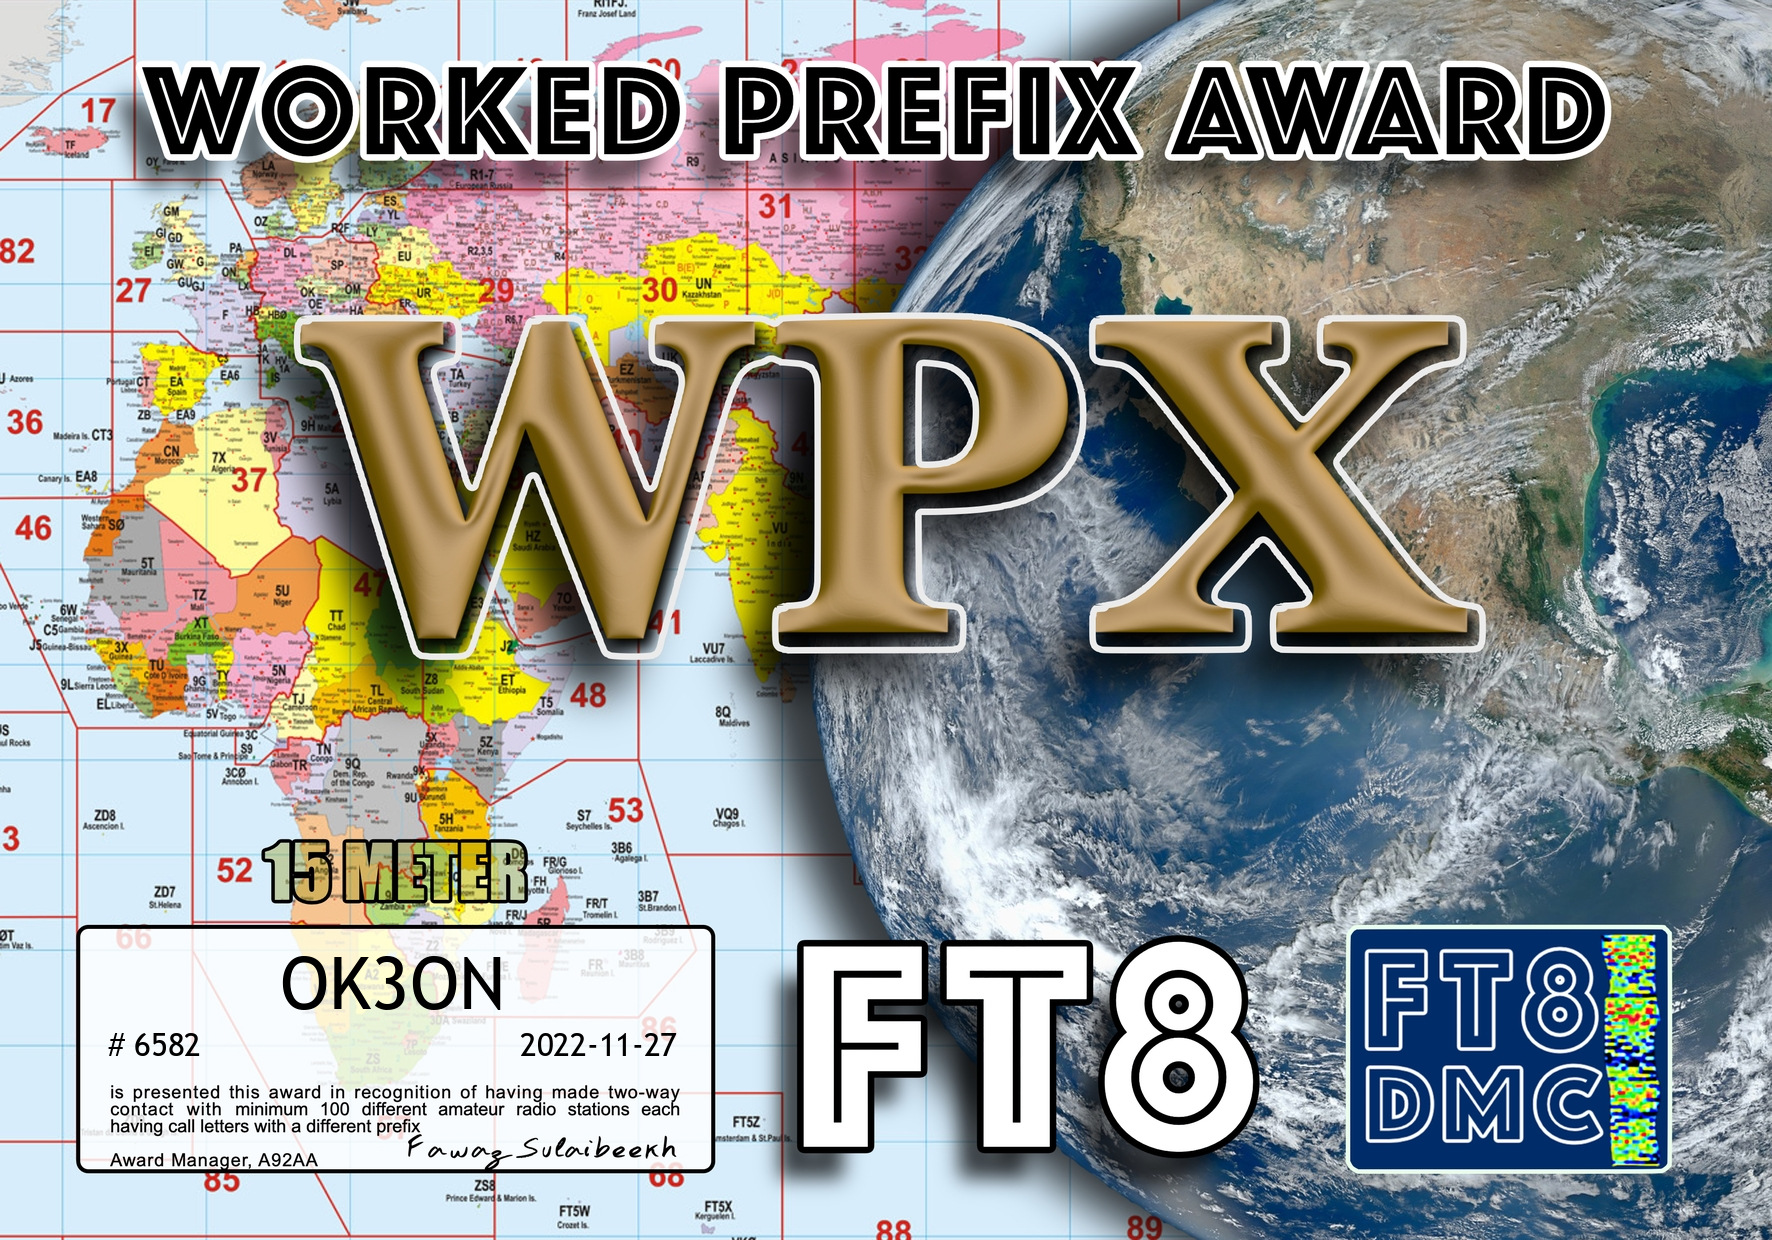 awards/OK3ON-WPX15-100_FT8DMC.jpg